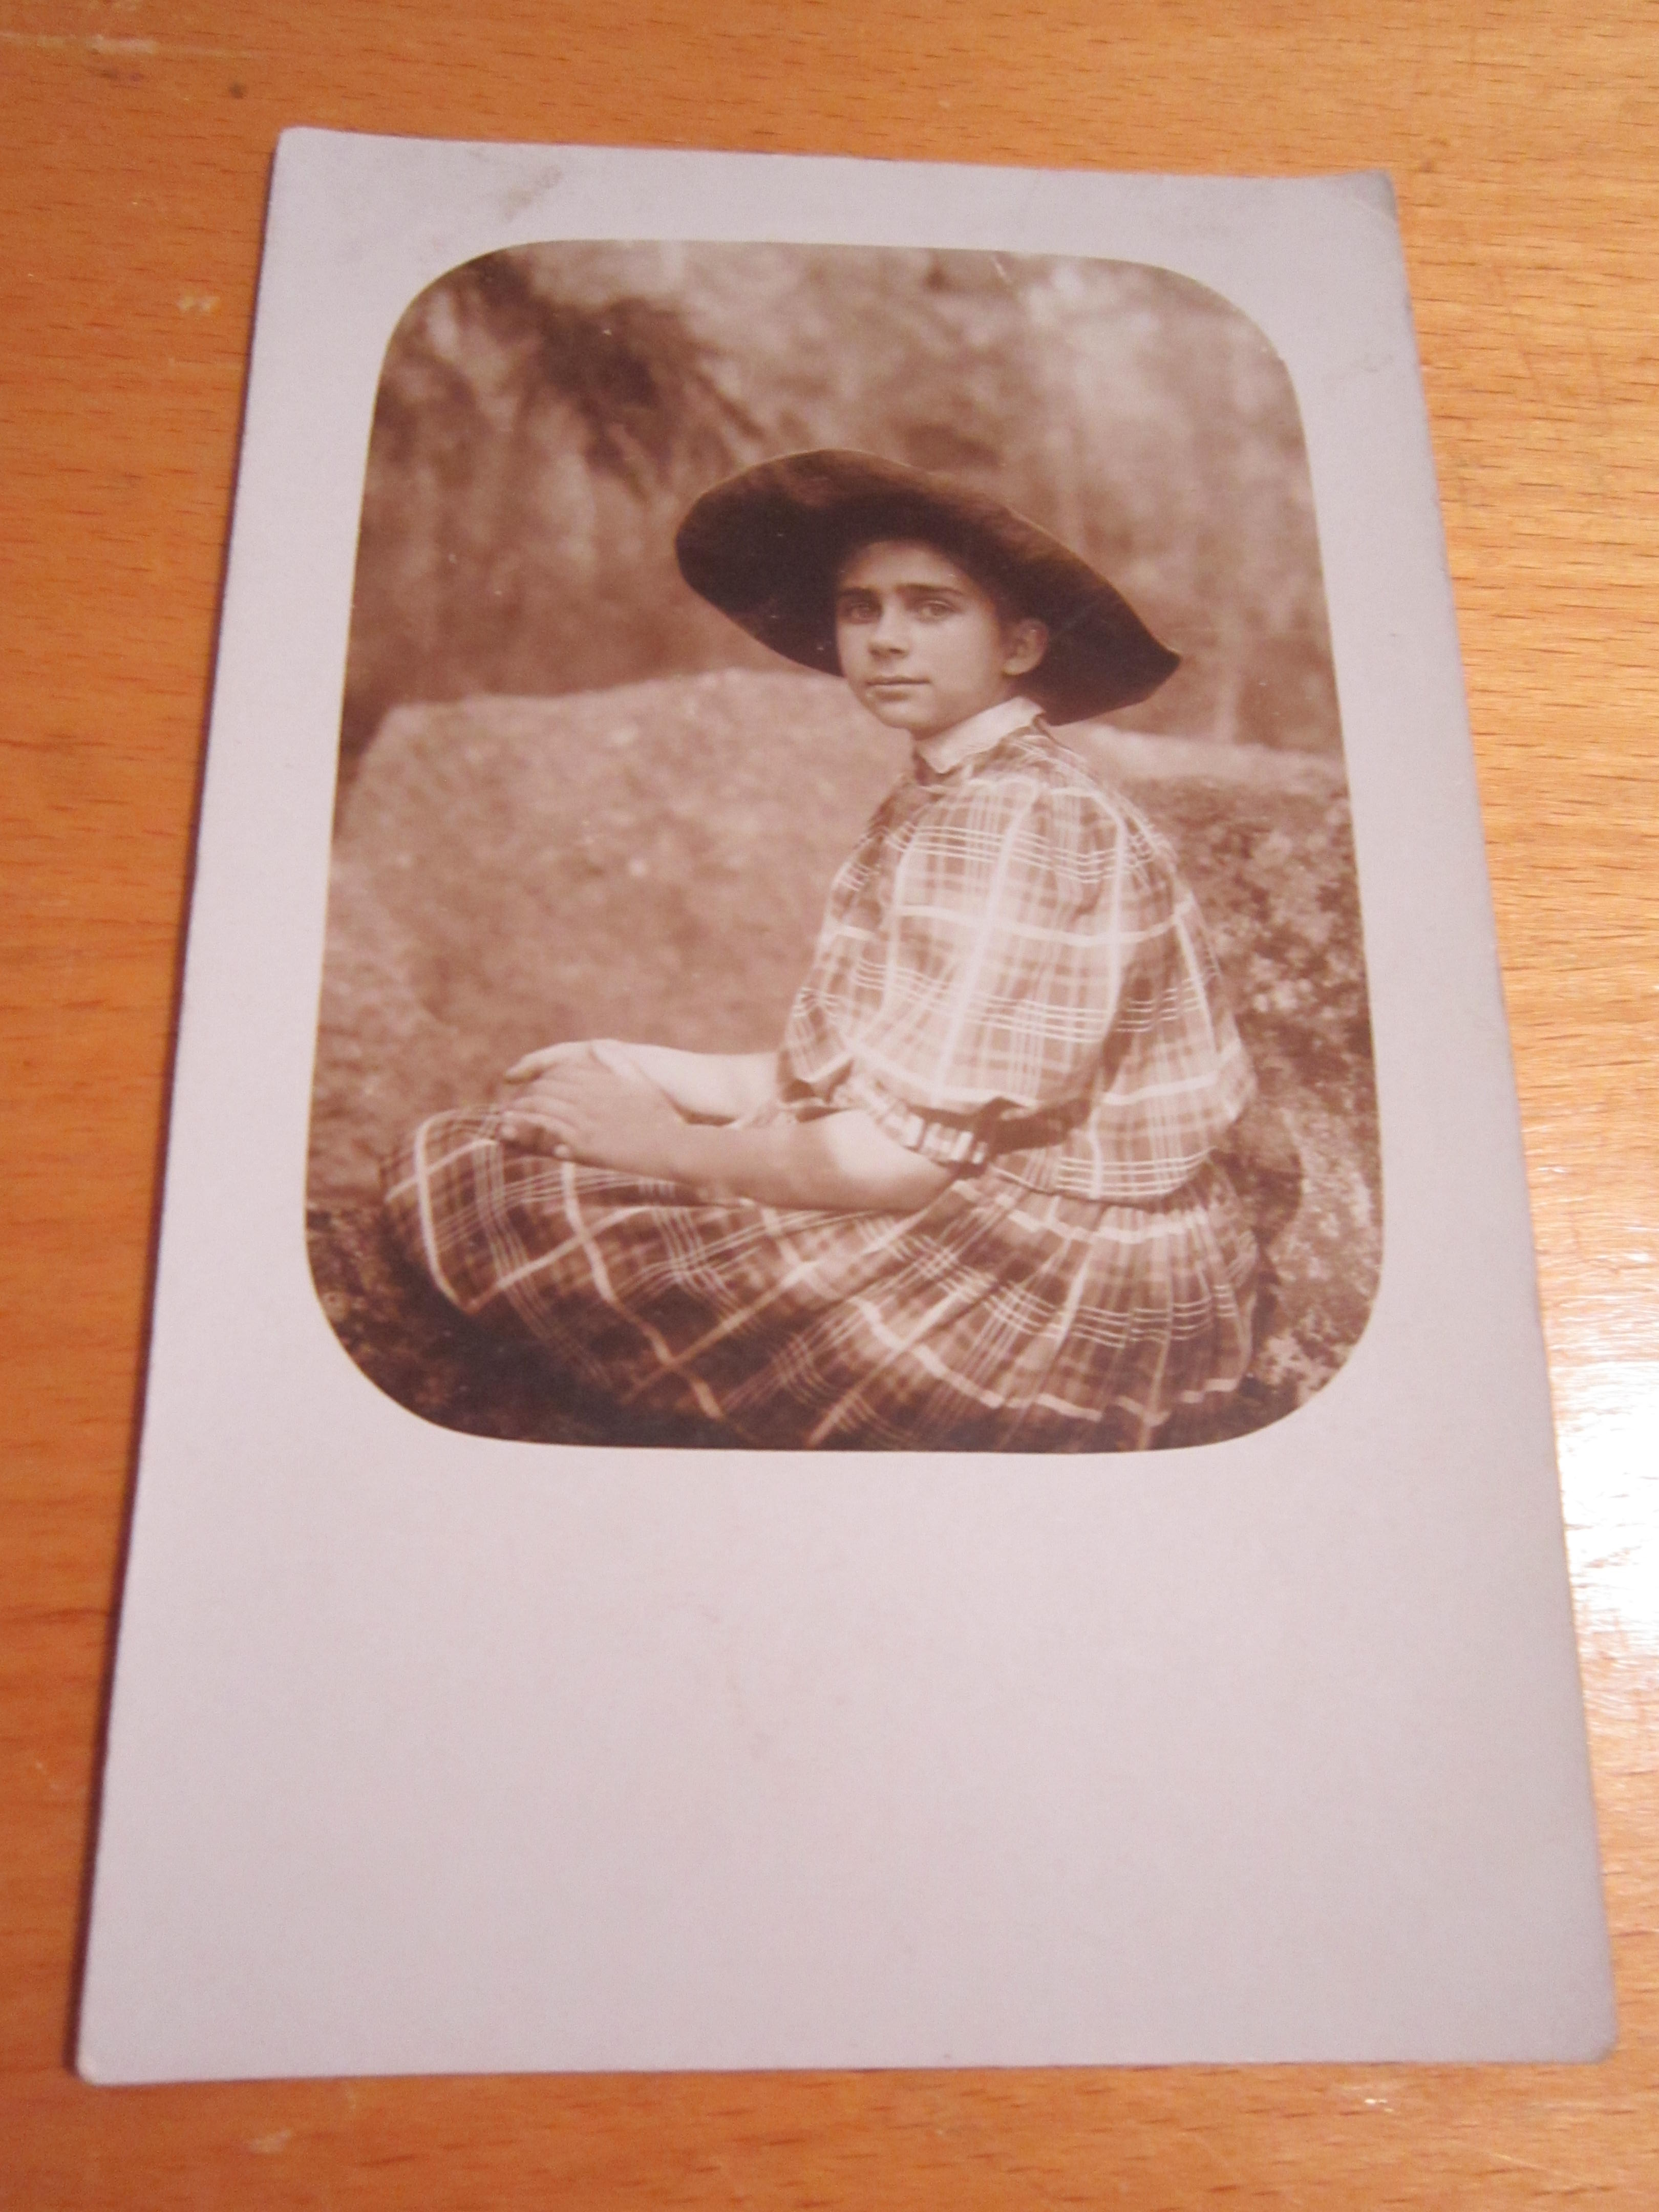 Открытое письмо.Почтовая карточка."Девочка в панаме на камне",до 1917 г.,фото одной семьи №10. 